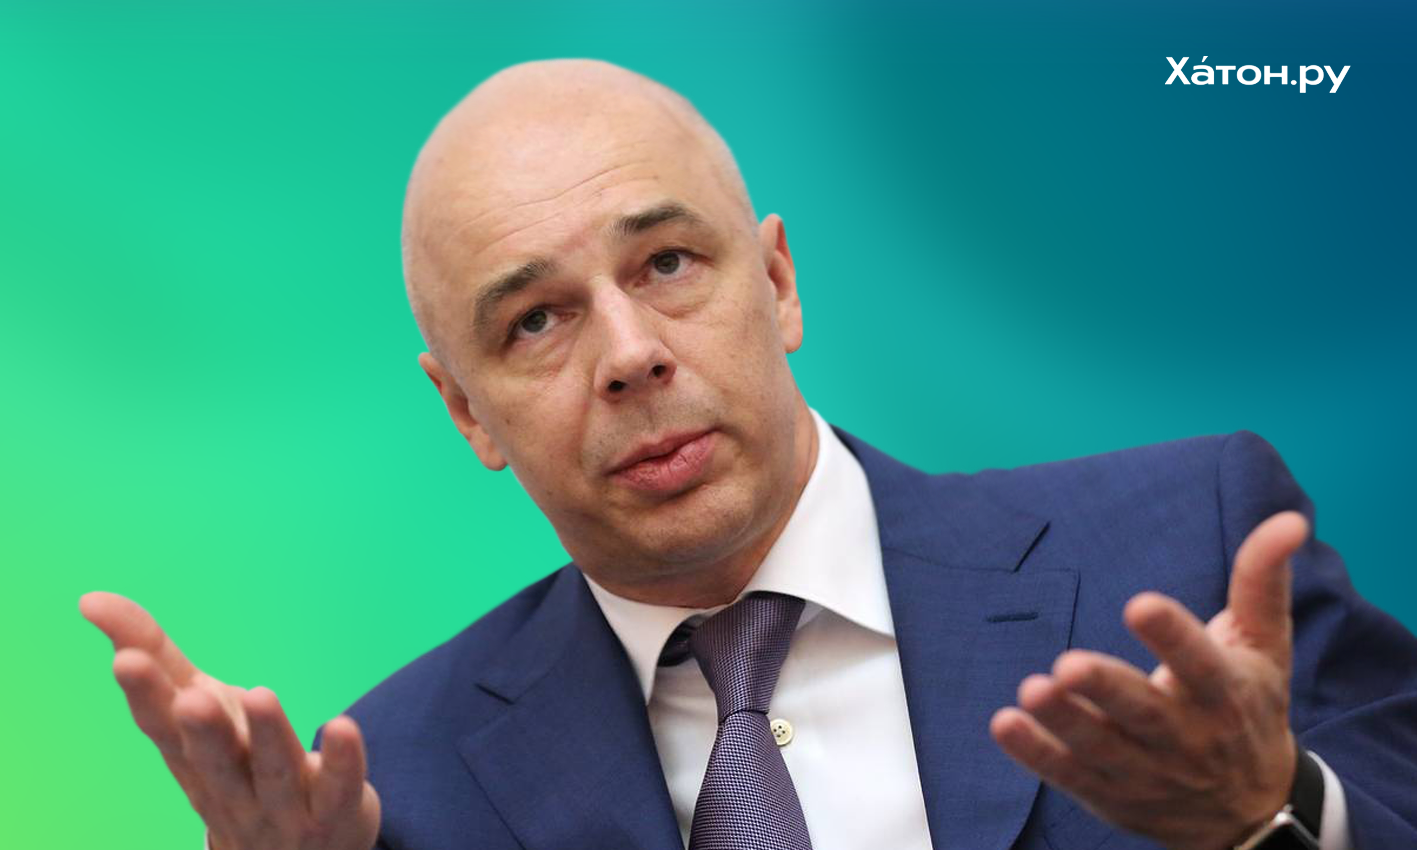 Глава Минфина Антон Силуанов предложил перетерпеть инфляцию без массовых компенсаций